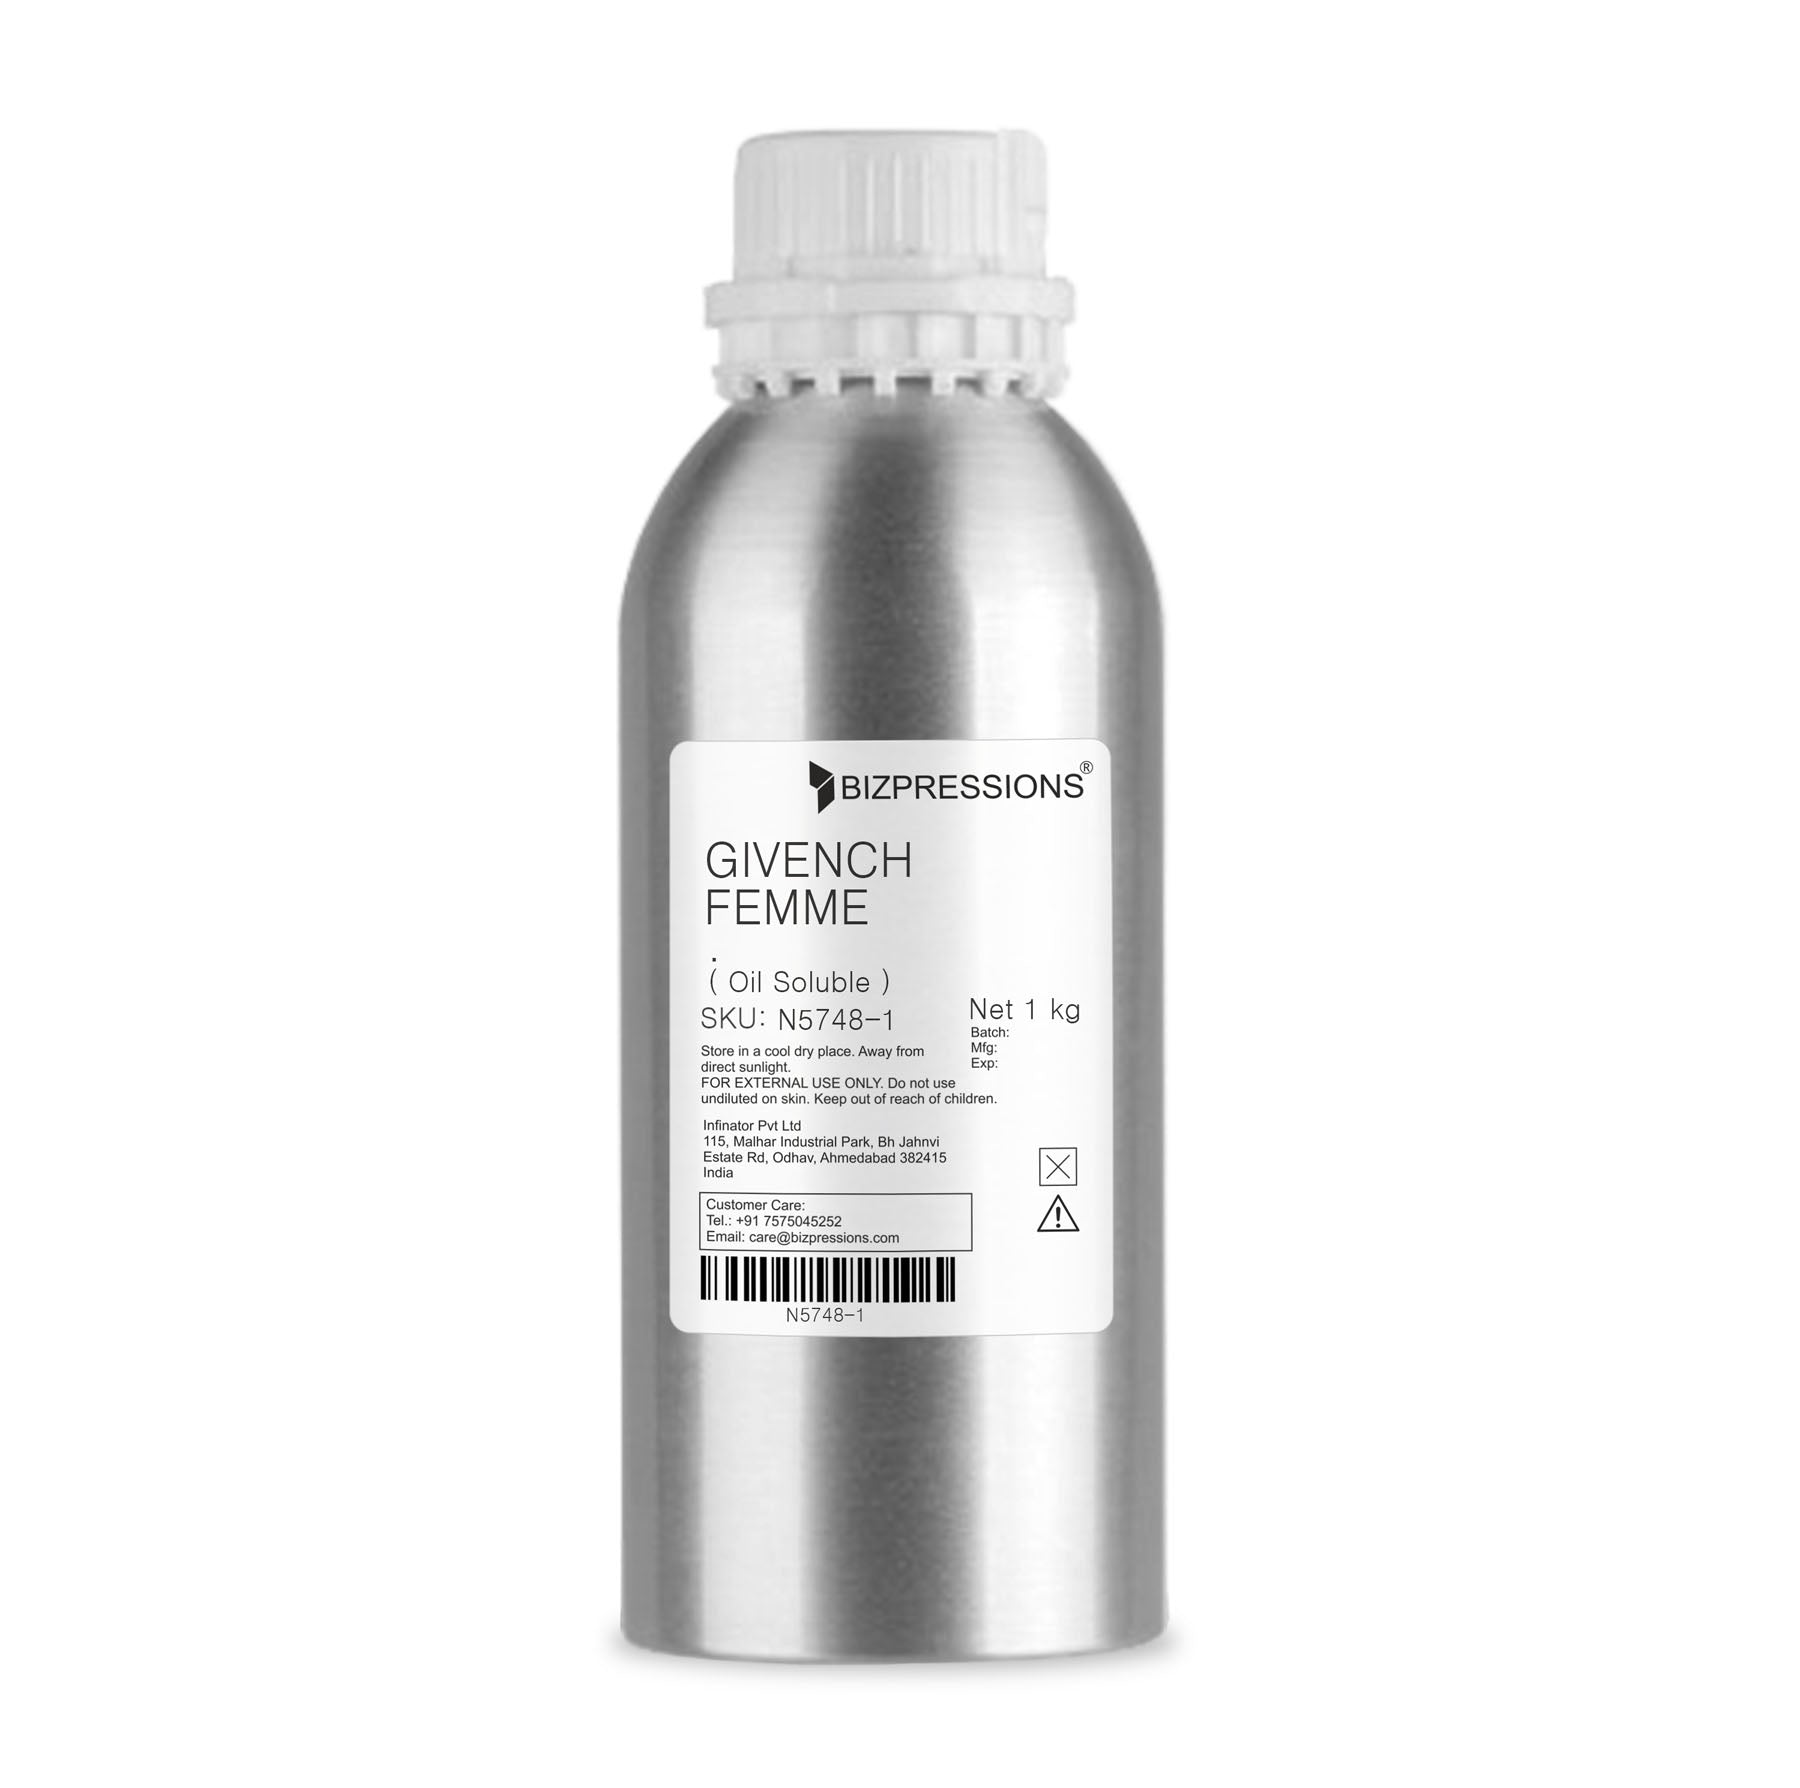 GIVENCH FEMME - Fragrance ( Oil Soluble ) - 1 kg